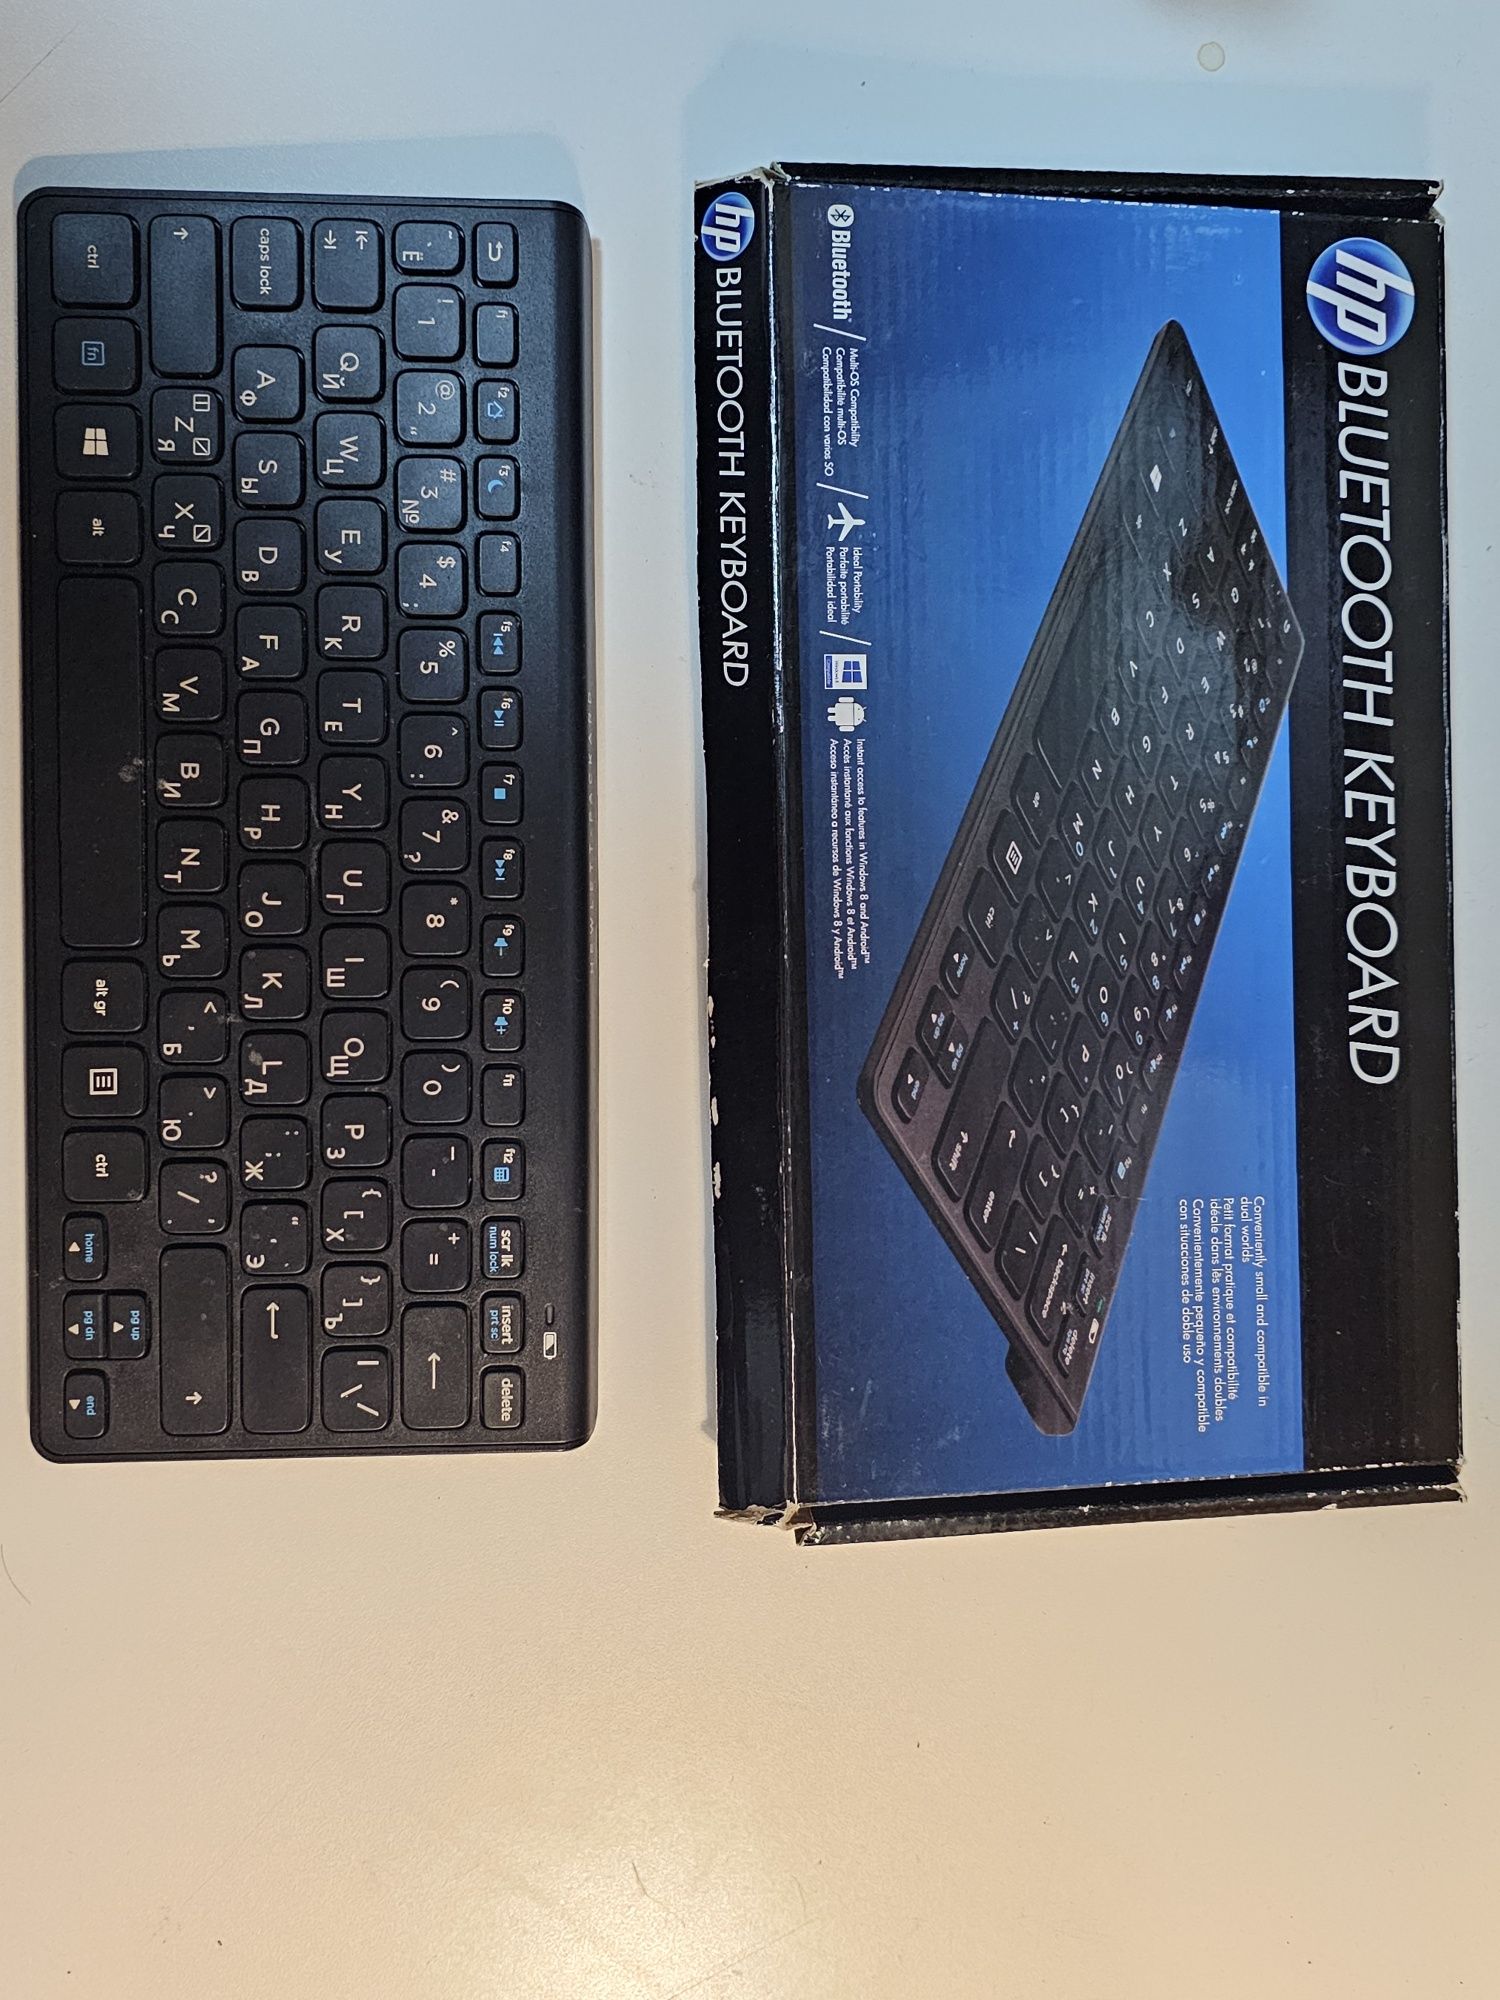 Продам клавиатуру HP Bluetooth keyboard sk-9071 блютуз клави